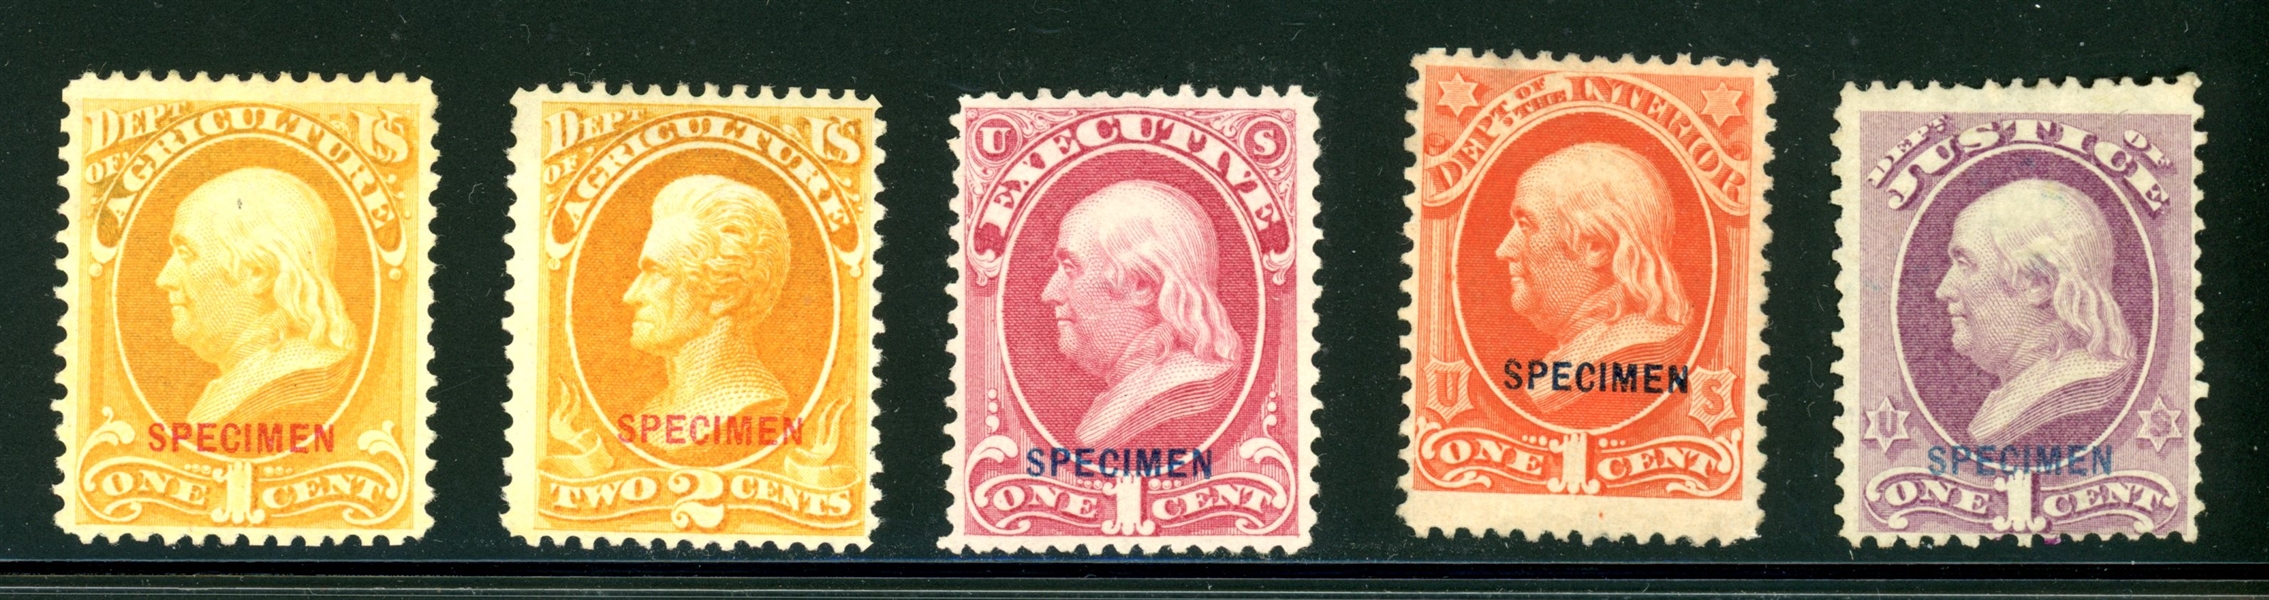 5 Different Official Specimen Overprints, Fine (SCV $190)